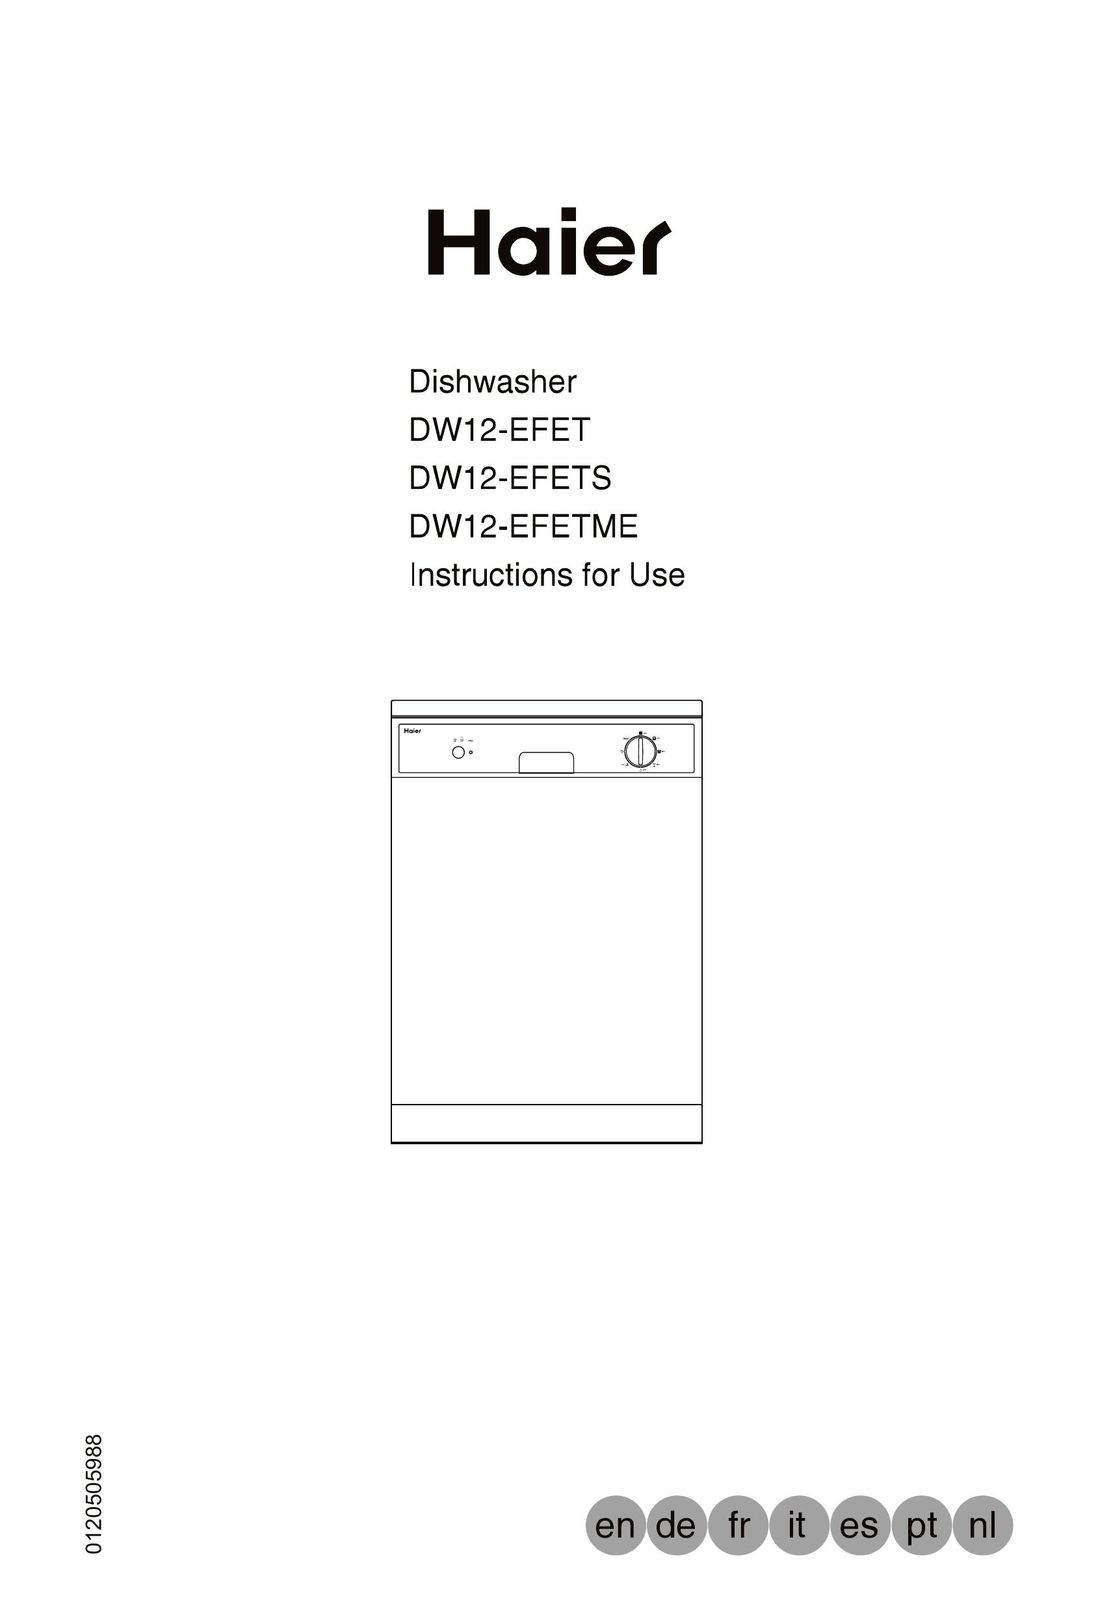 Haier DW12-EFET Dishwasher User Manual